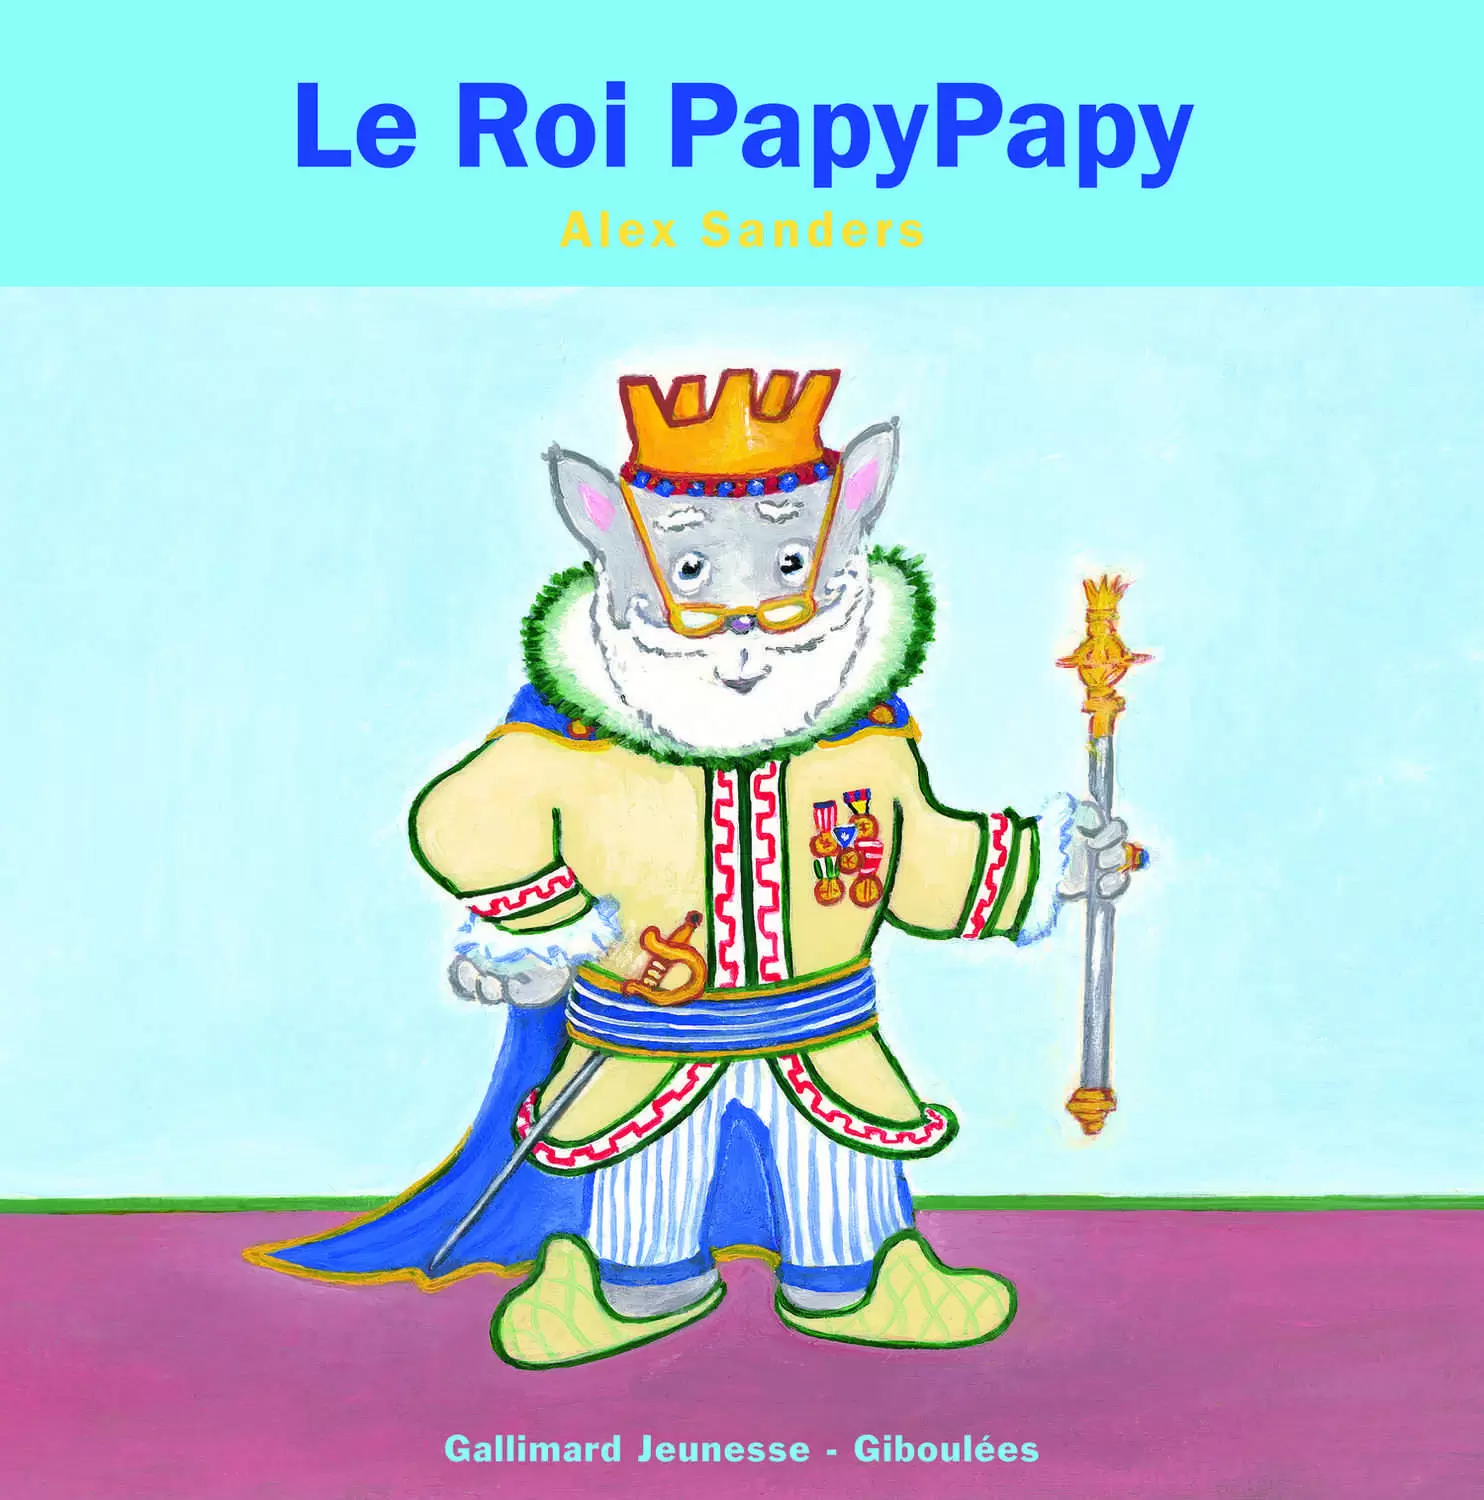 Les Rois Les Reines - Le Roi PapyPapy